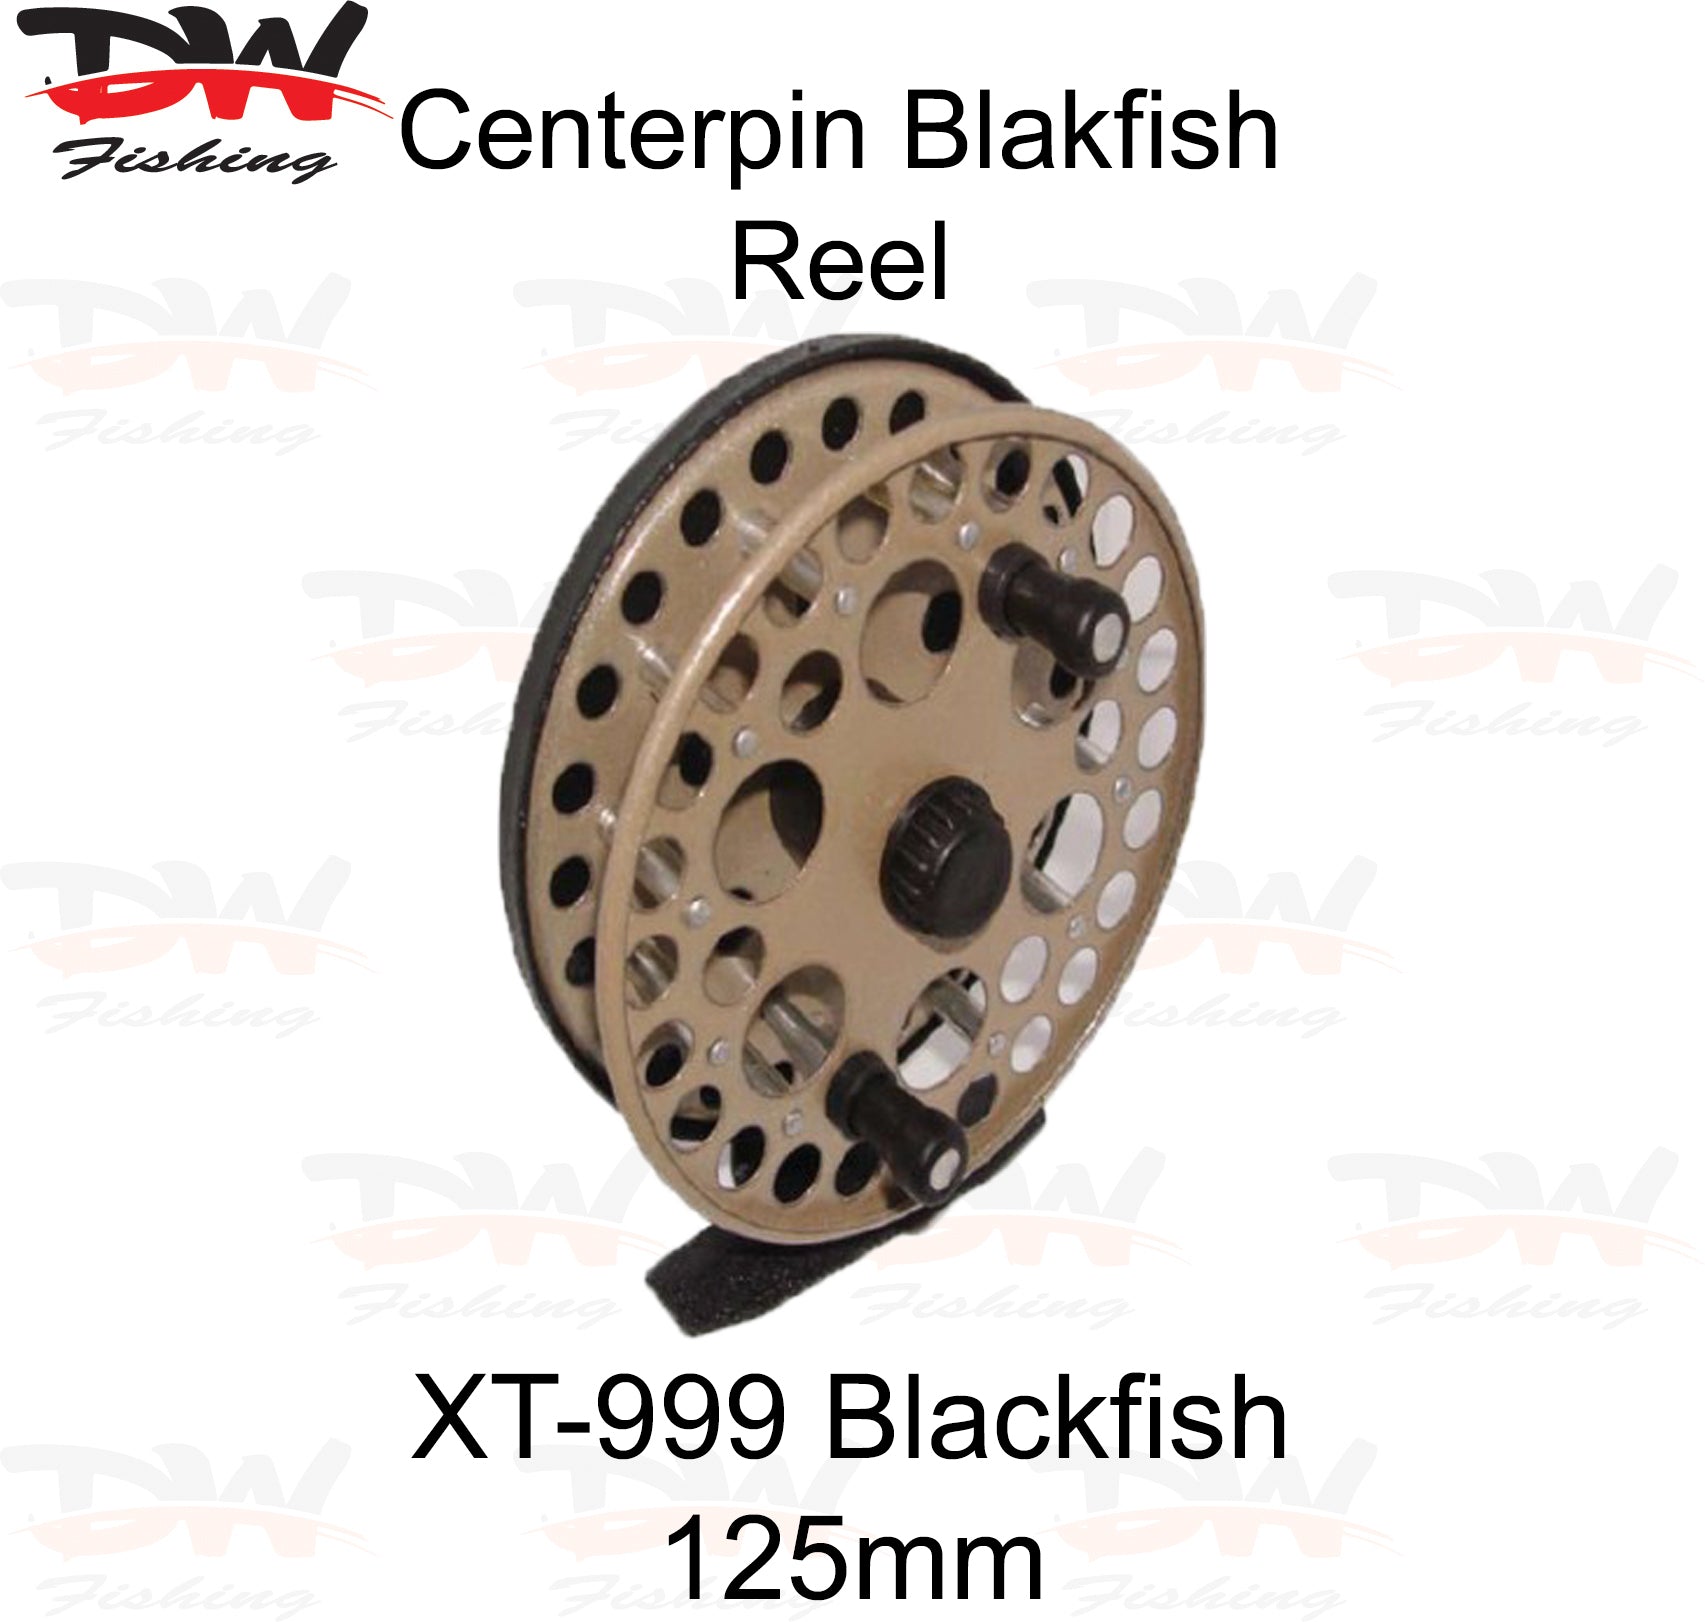 Blackfish Reel XT-999 Economy 125mm Centerpin Fishing Reel